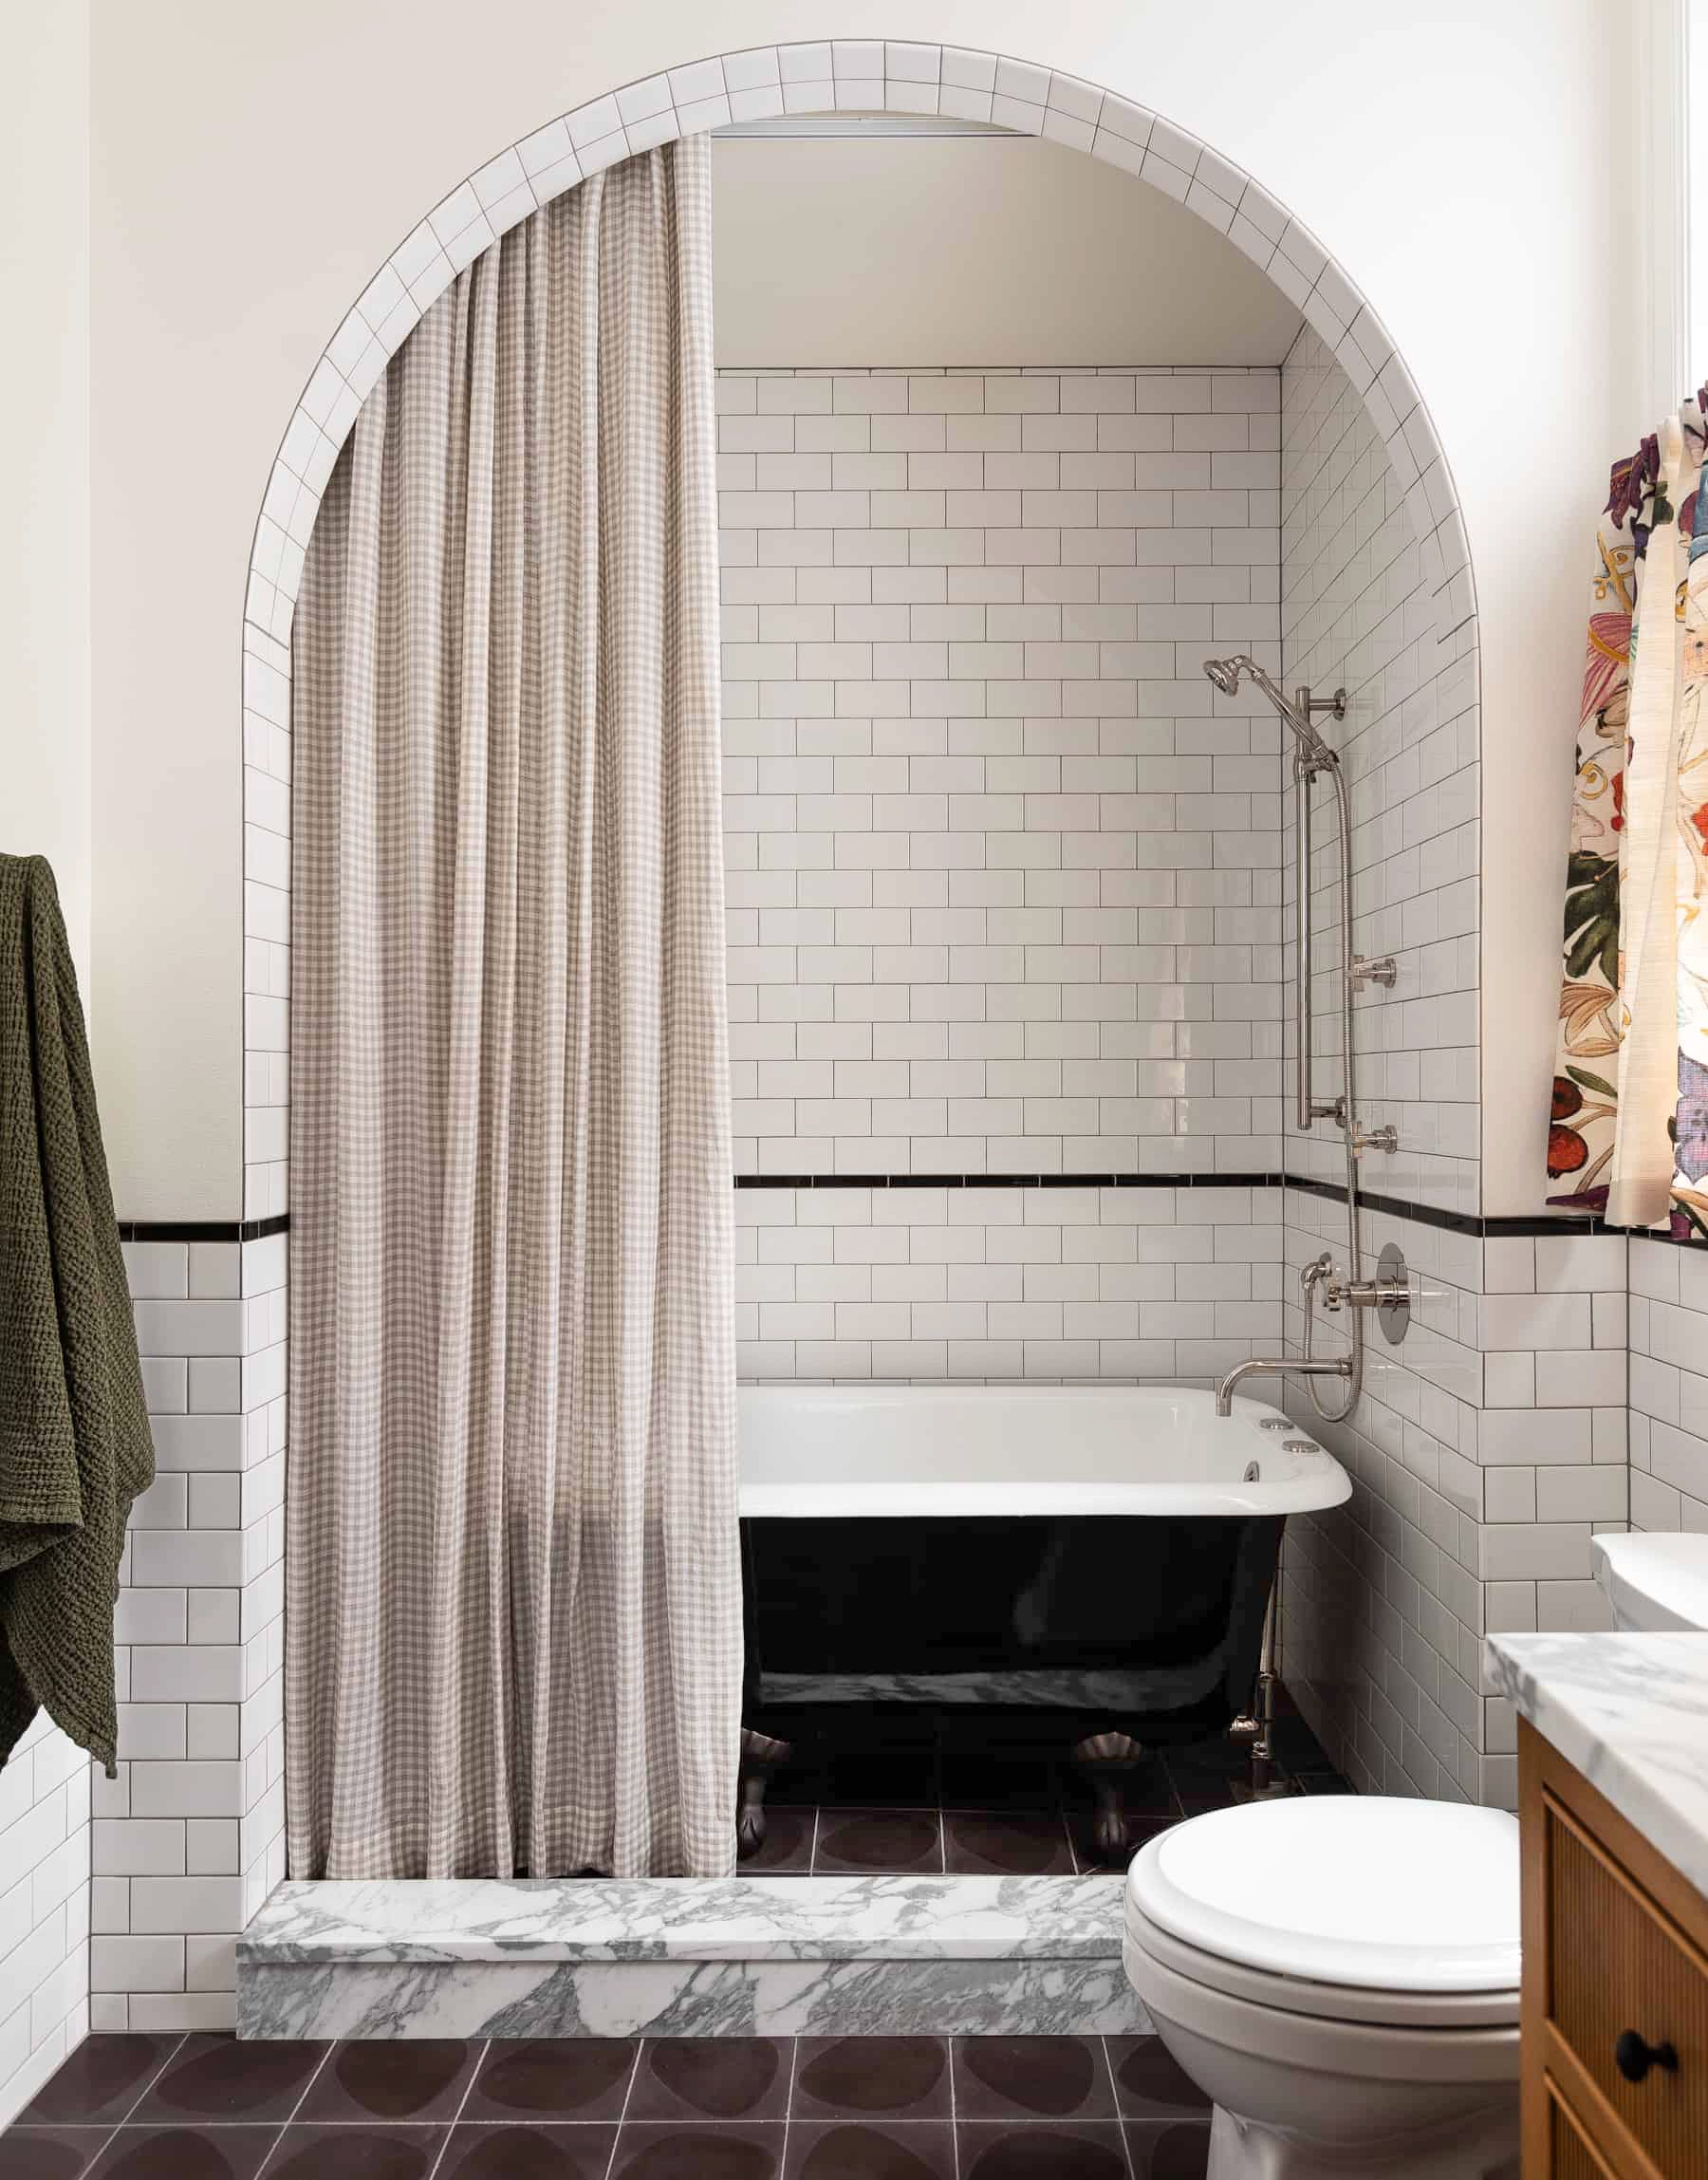 55 Bathroom Tile Ideas Bath, Can You Retile Your Own Bathroom